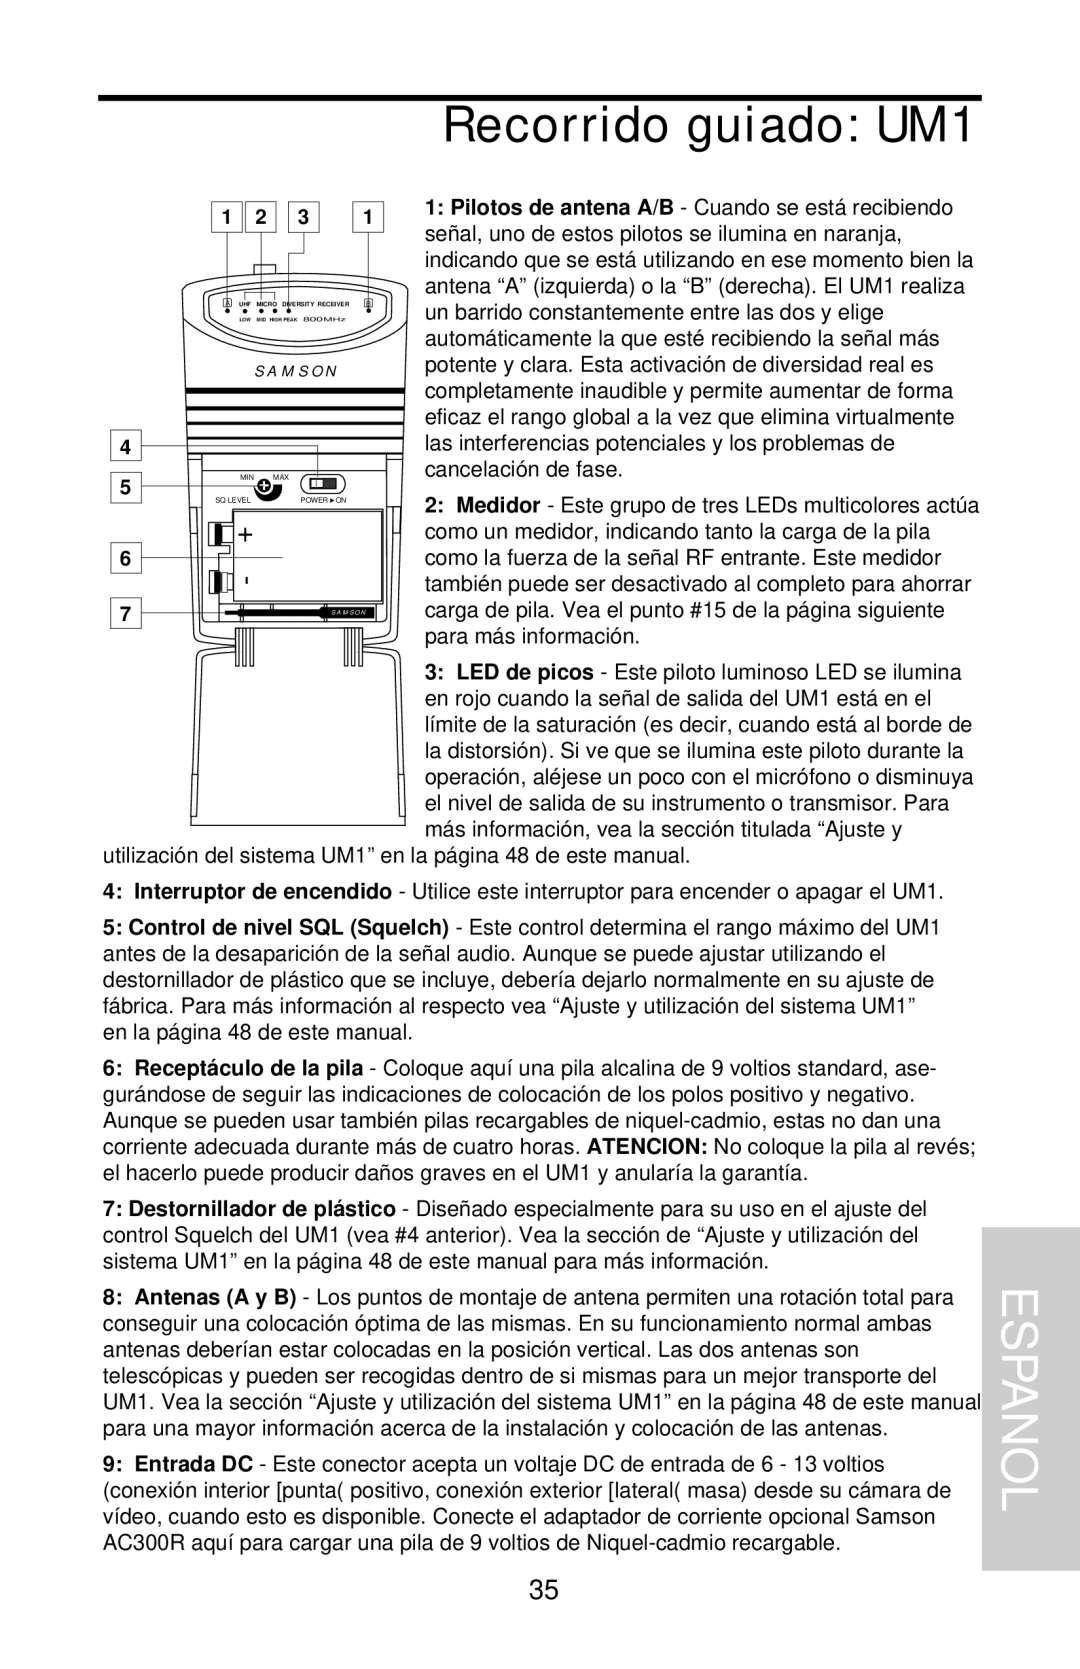 Samson UHF Series One owner manual Recorrido guiado UM1, Espanol 